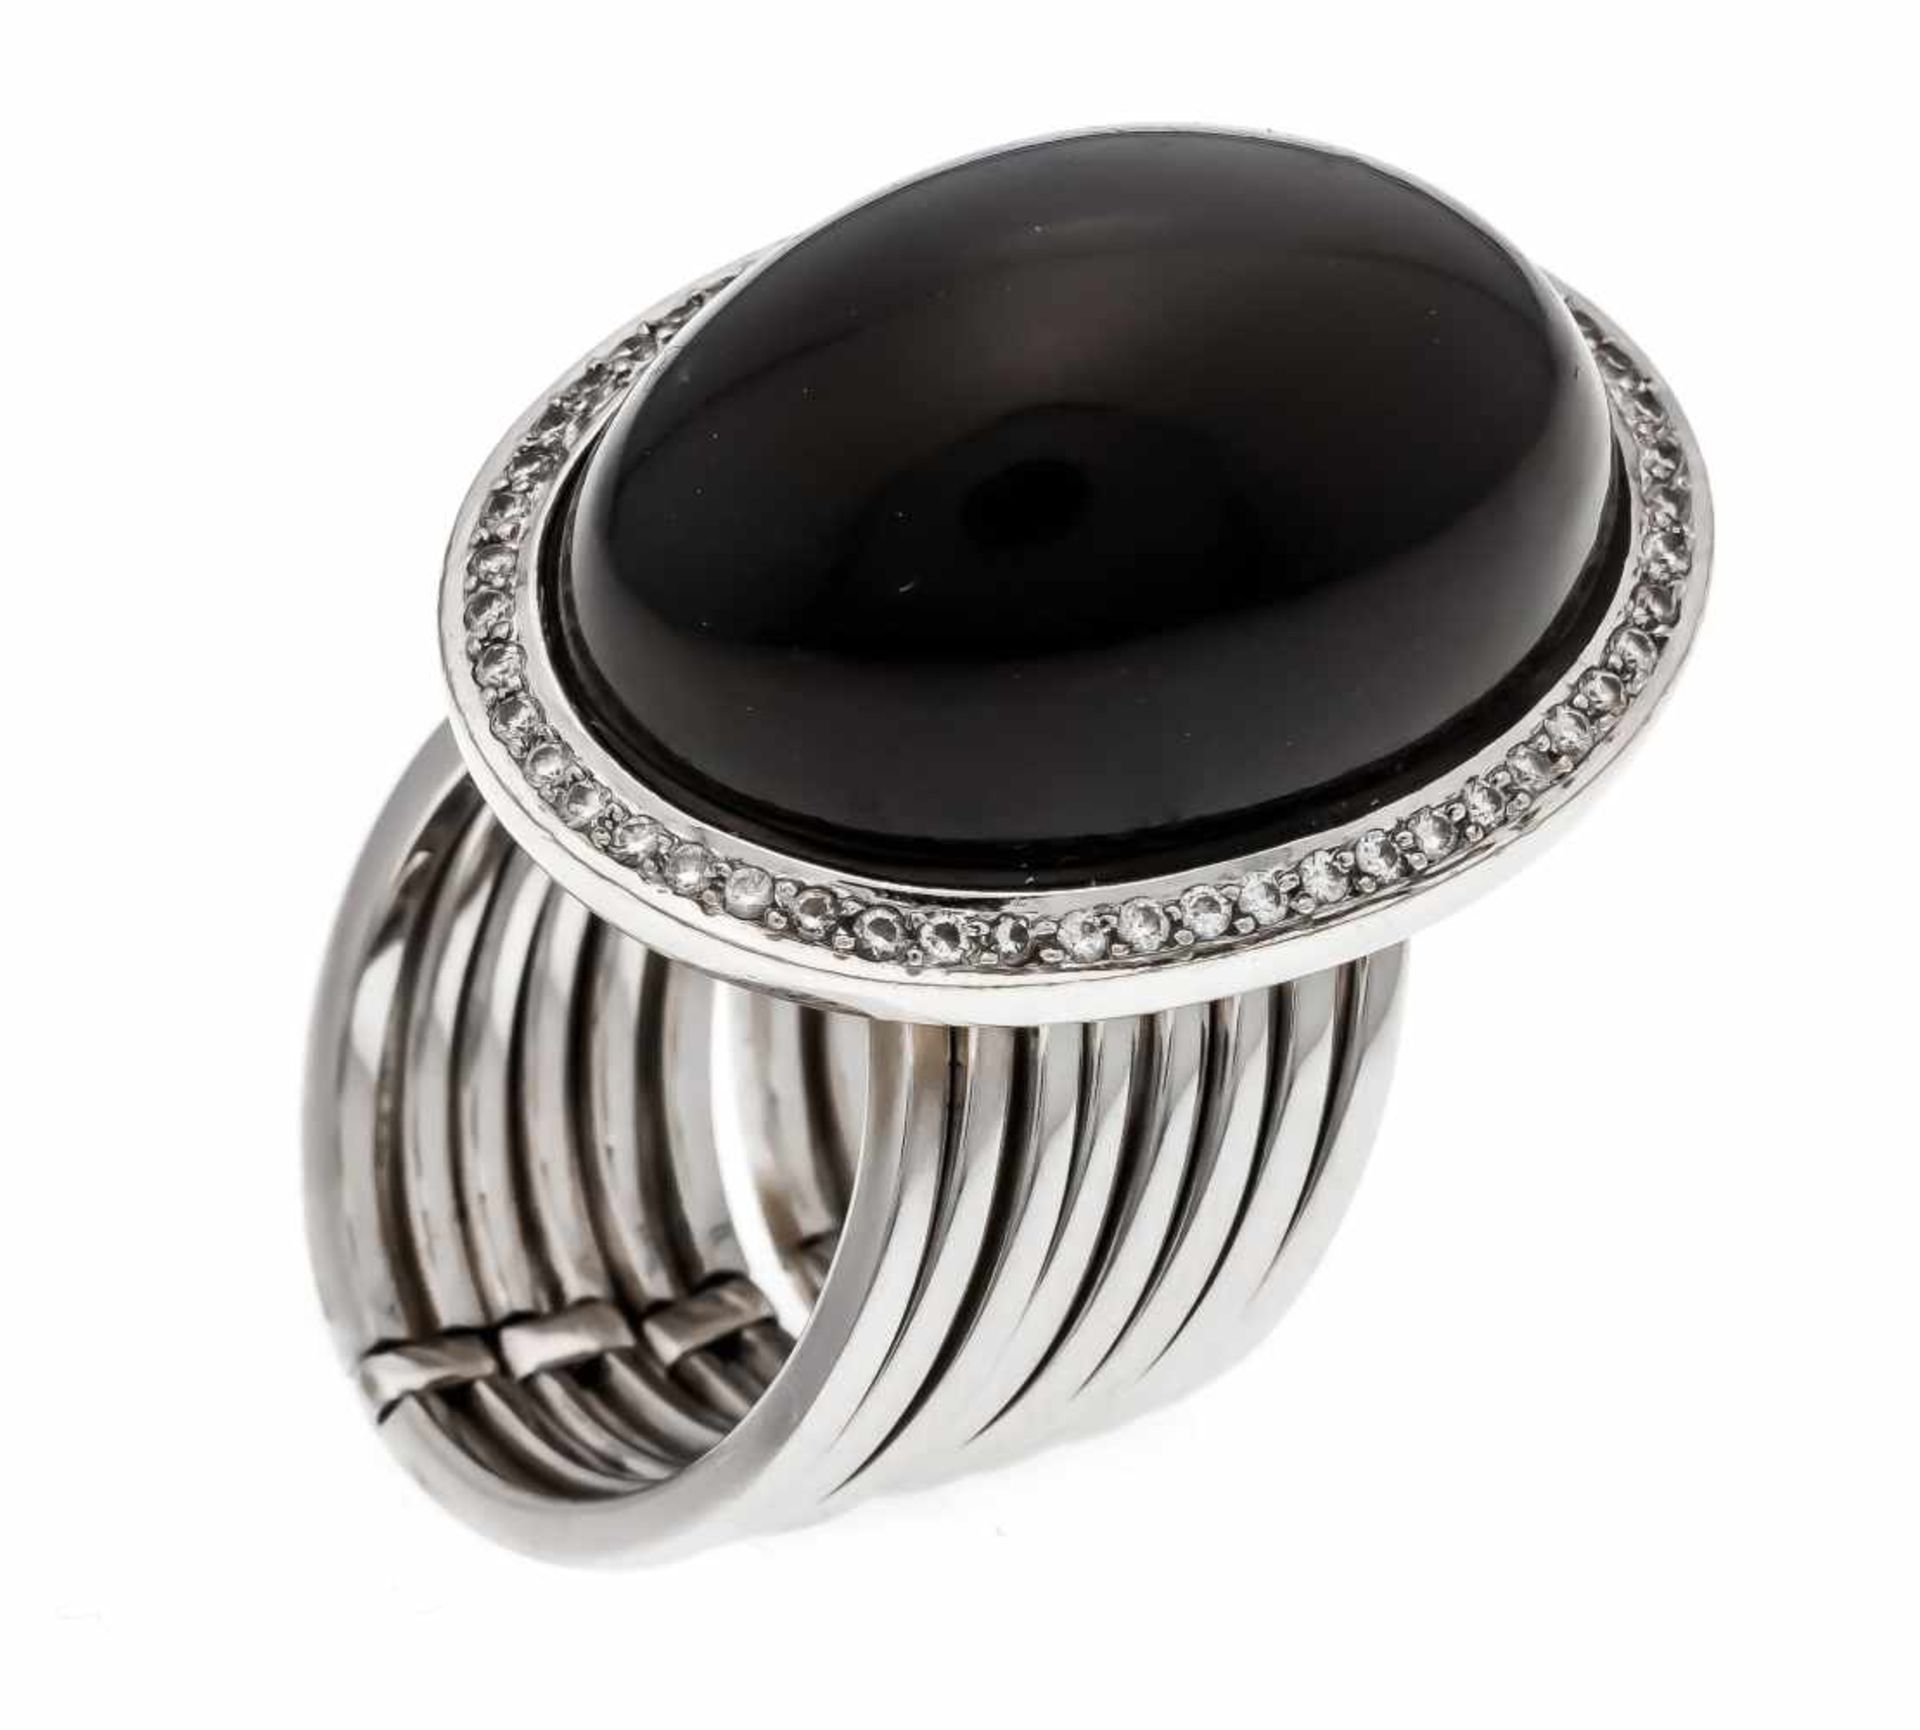 Mondstein-Brillant-Ring/Armband WG 750/000 mit einem ovalen Mondstein-Cabochon 25 x 18 mmund